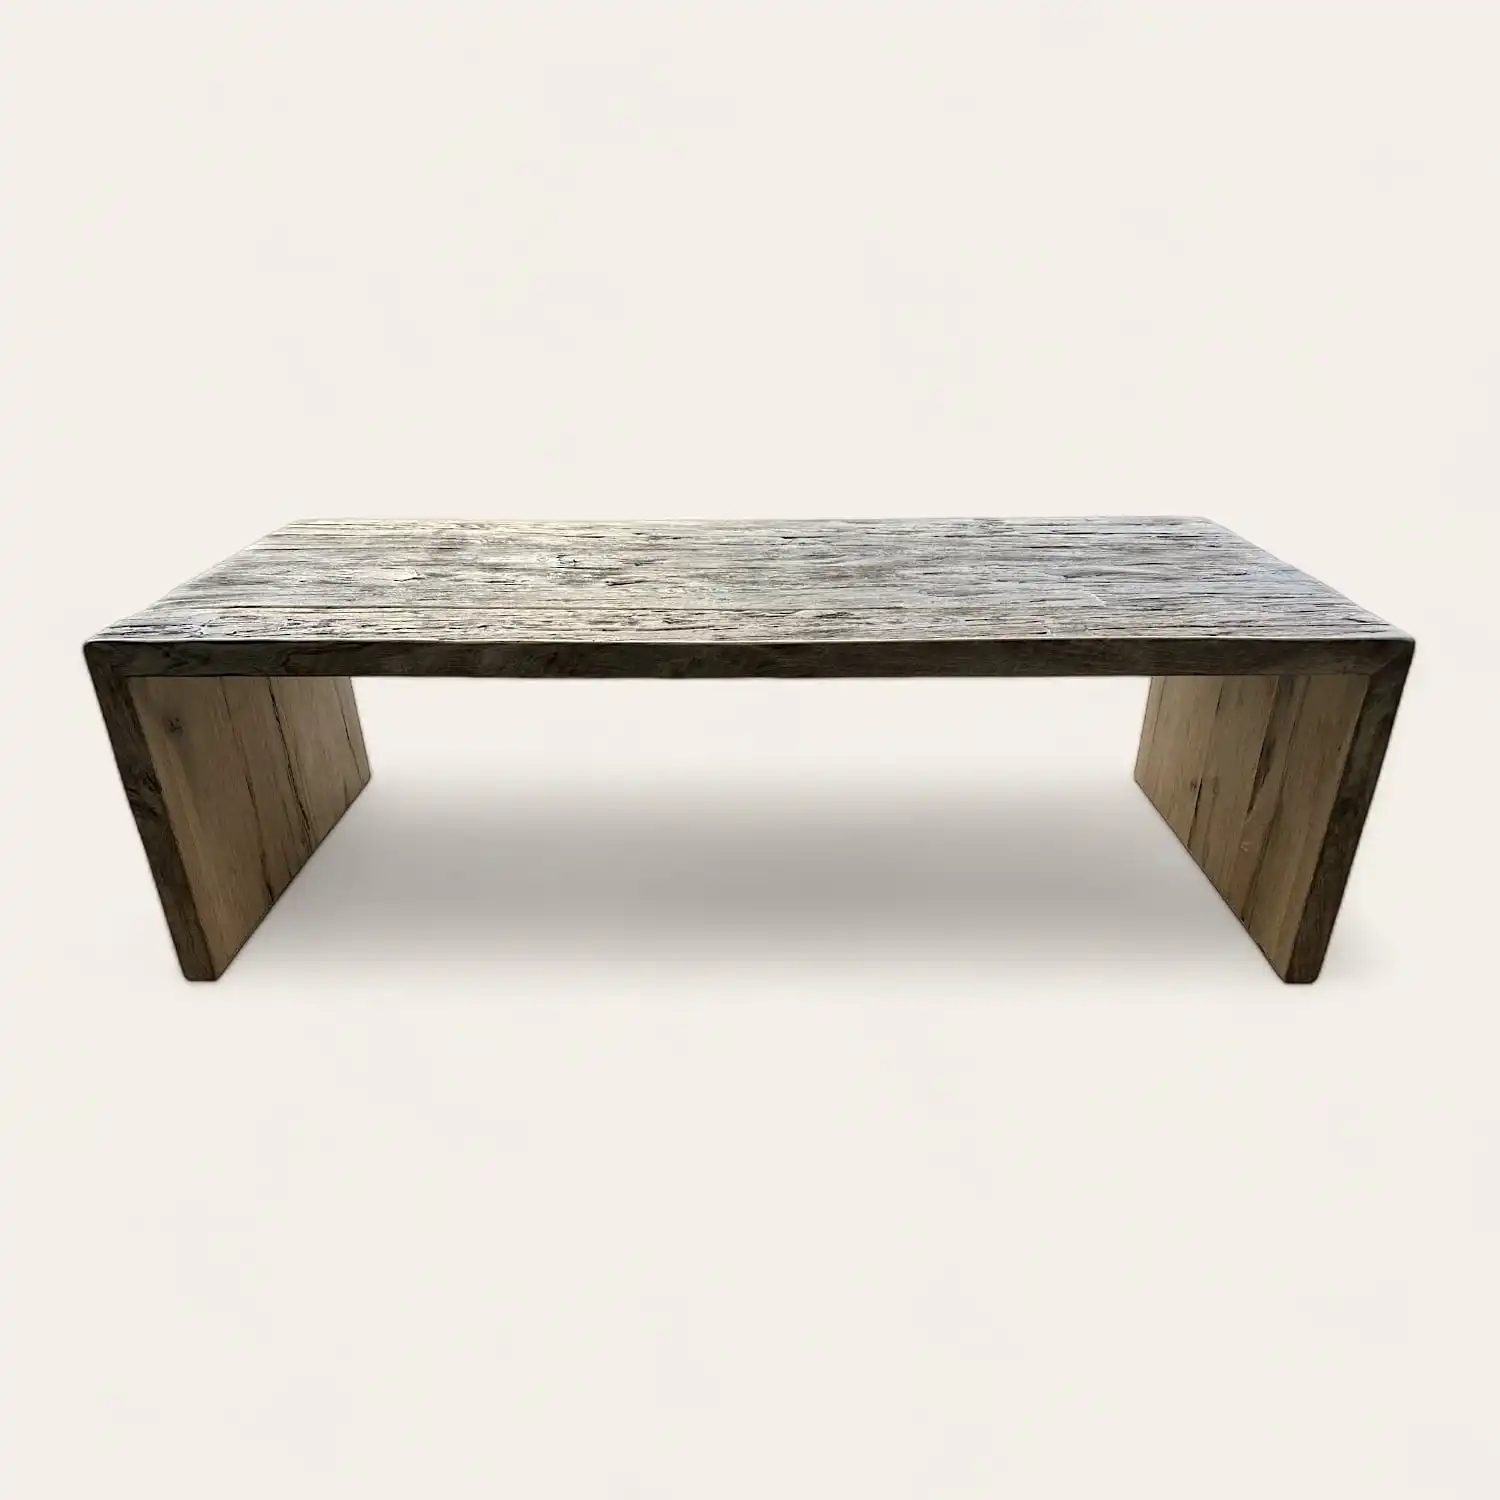  Une table basse rustique en bois avec un plateau en bois. 